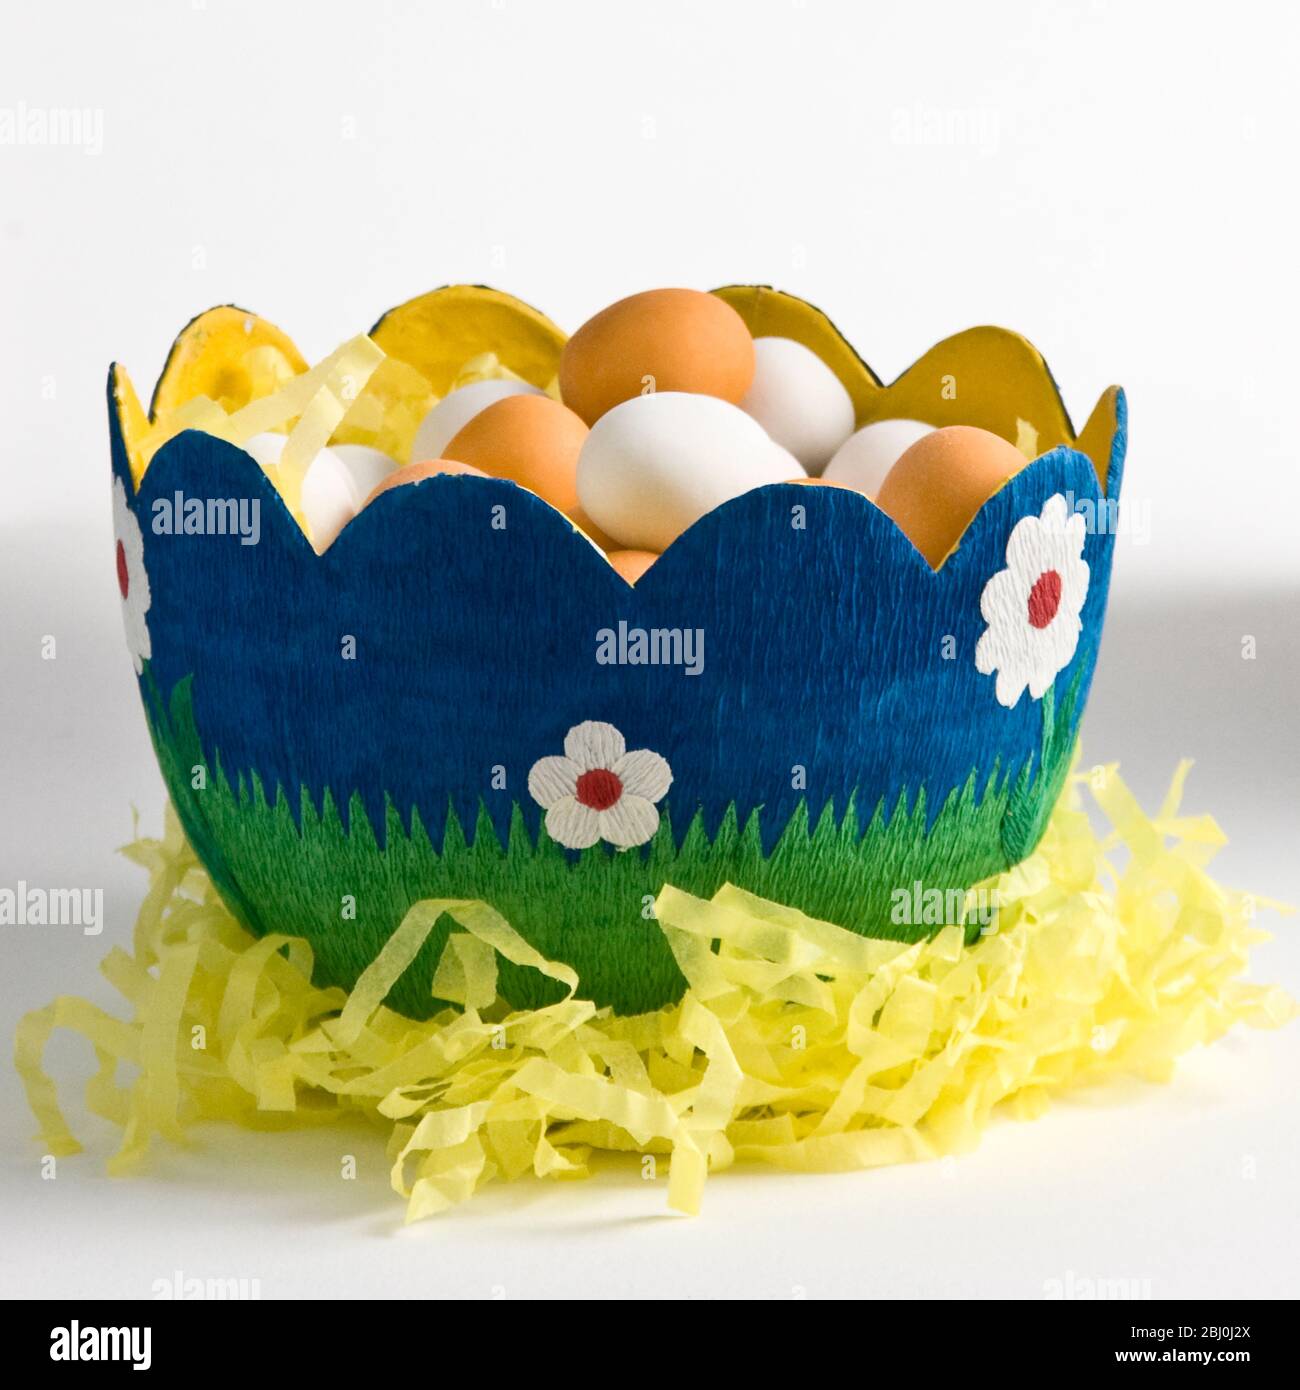 Cuenco de papel decorado con forma de huevo con huevos de chocolate recubiertos de azúcar - Foto de stock